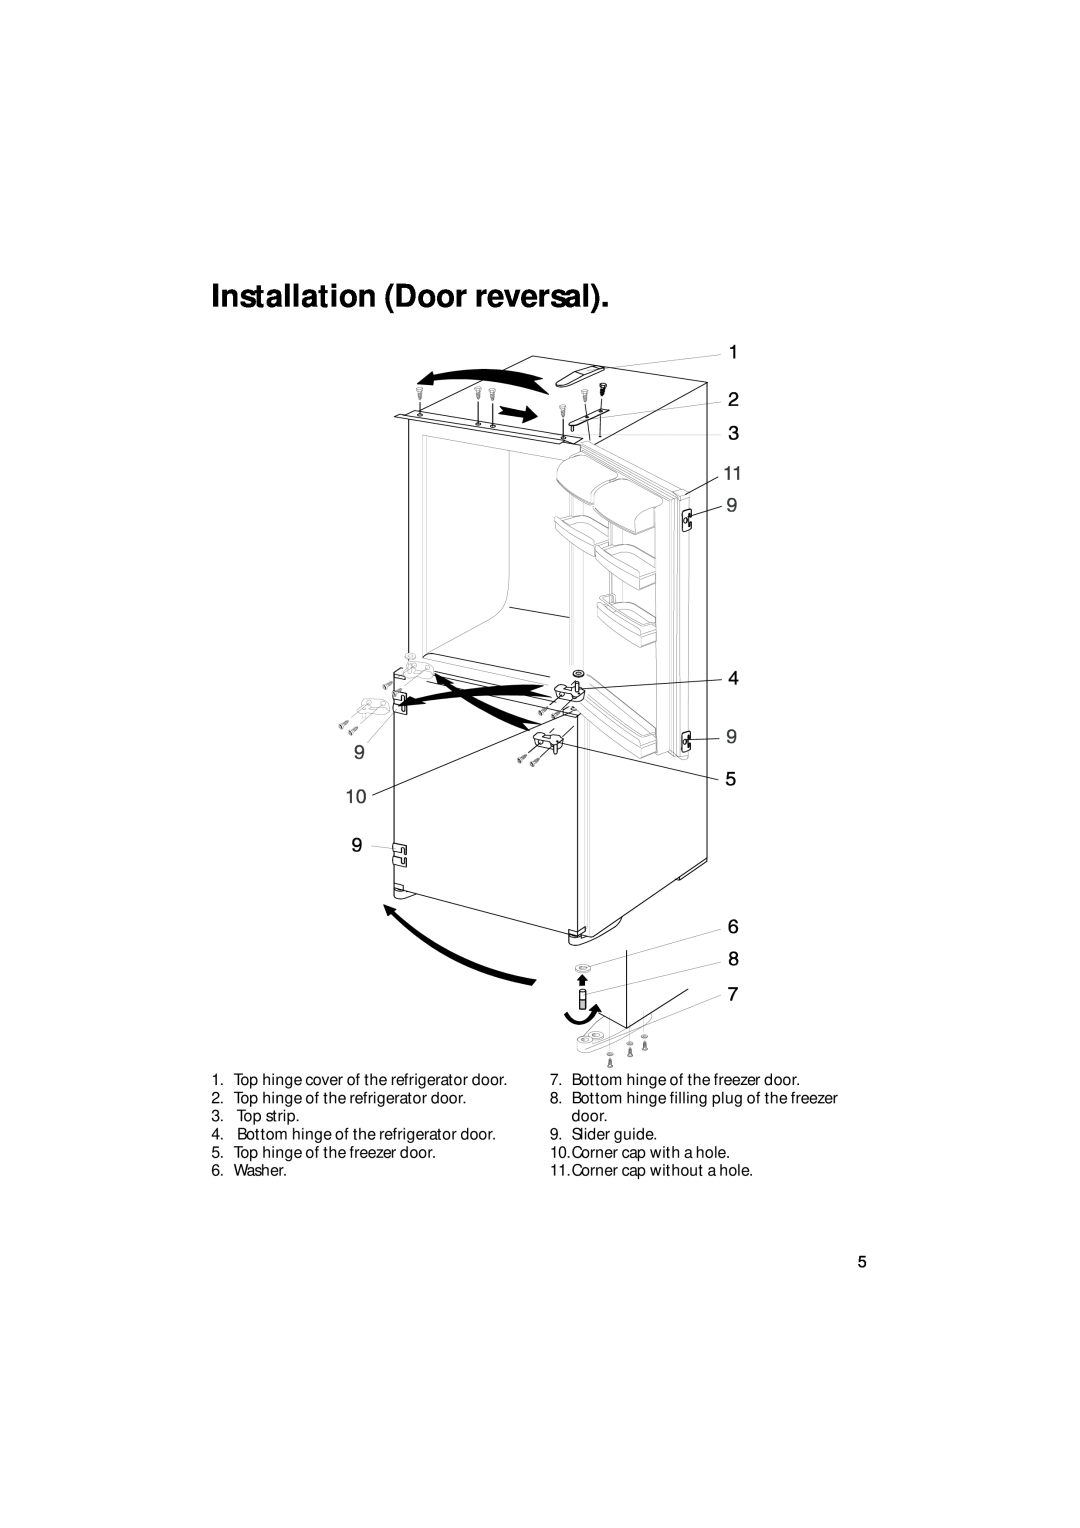 Hotpoint HM311i Installation Door reversal, Top hinge cover of the refrigerator door, Bottom hinge of the freezer door 